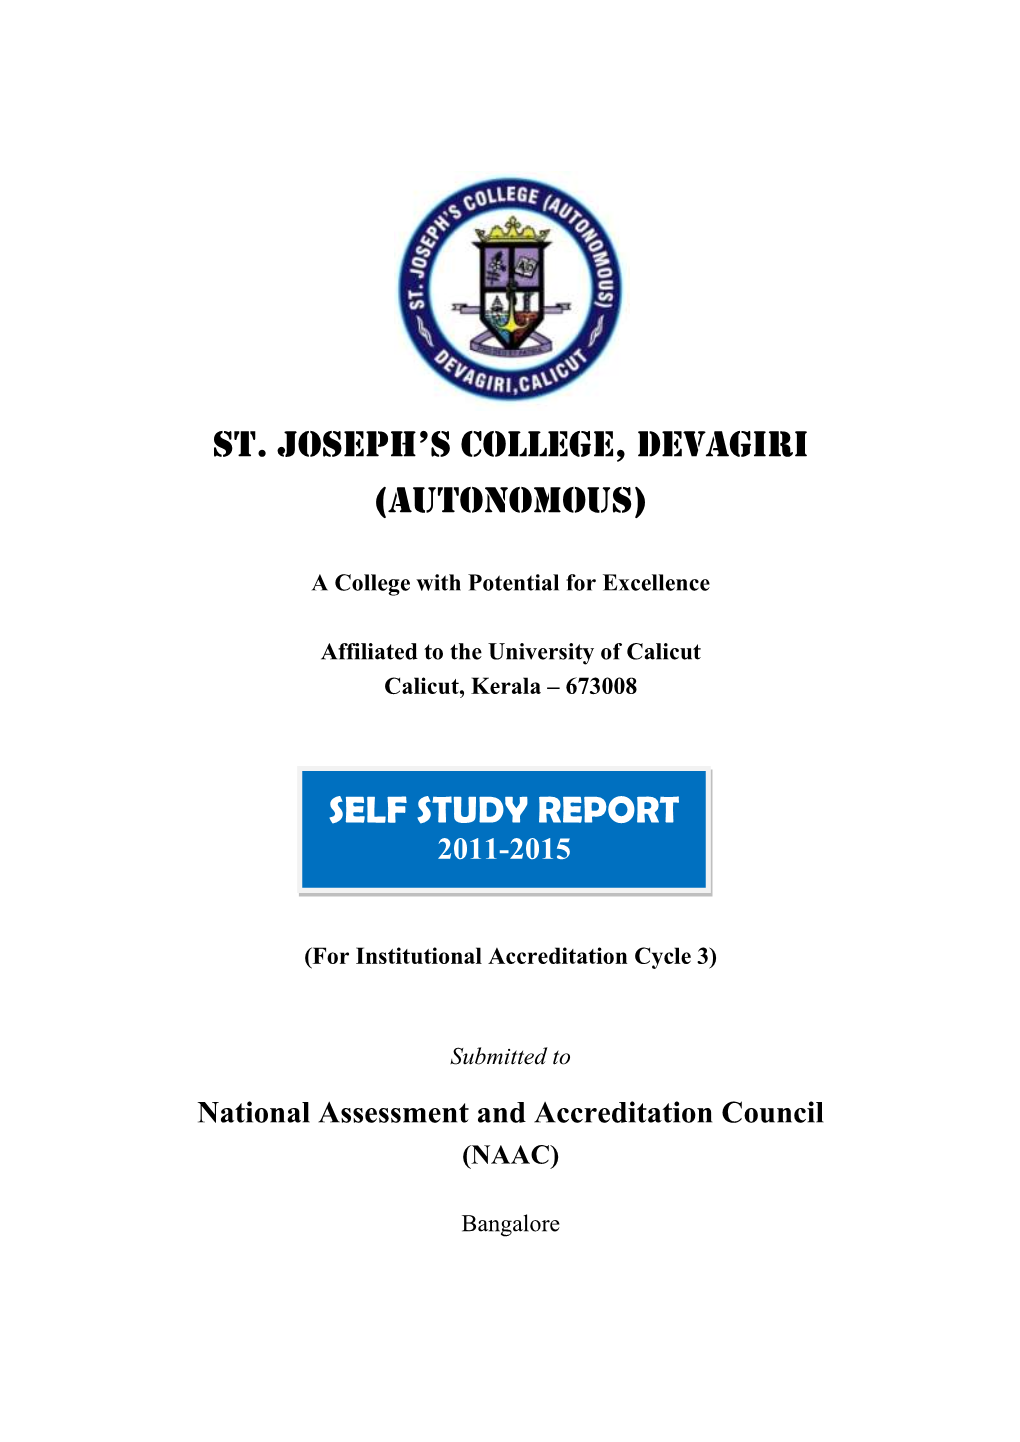 Self Study Report (SSR) of St